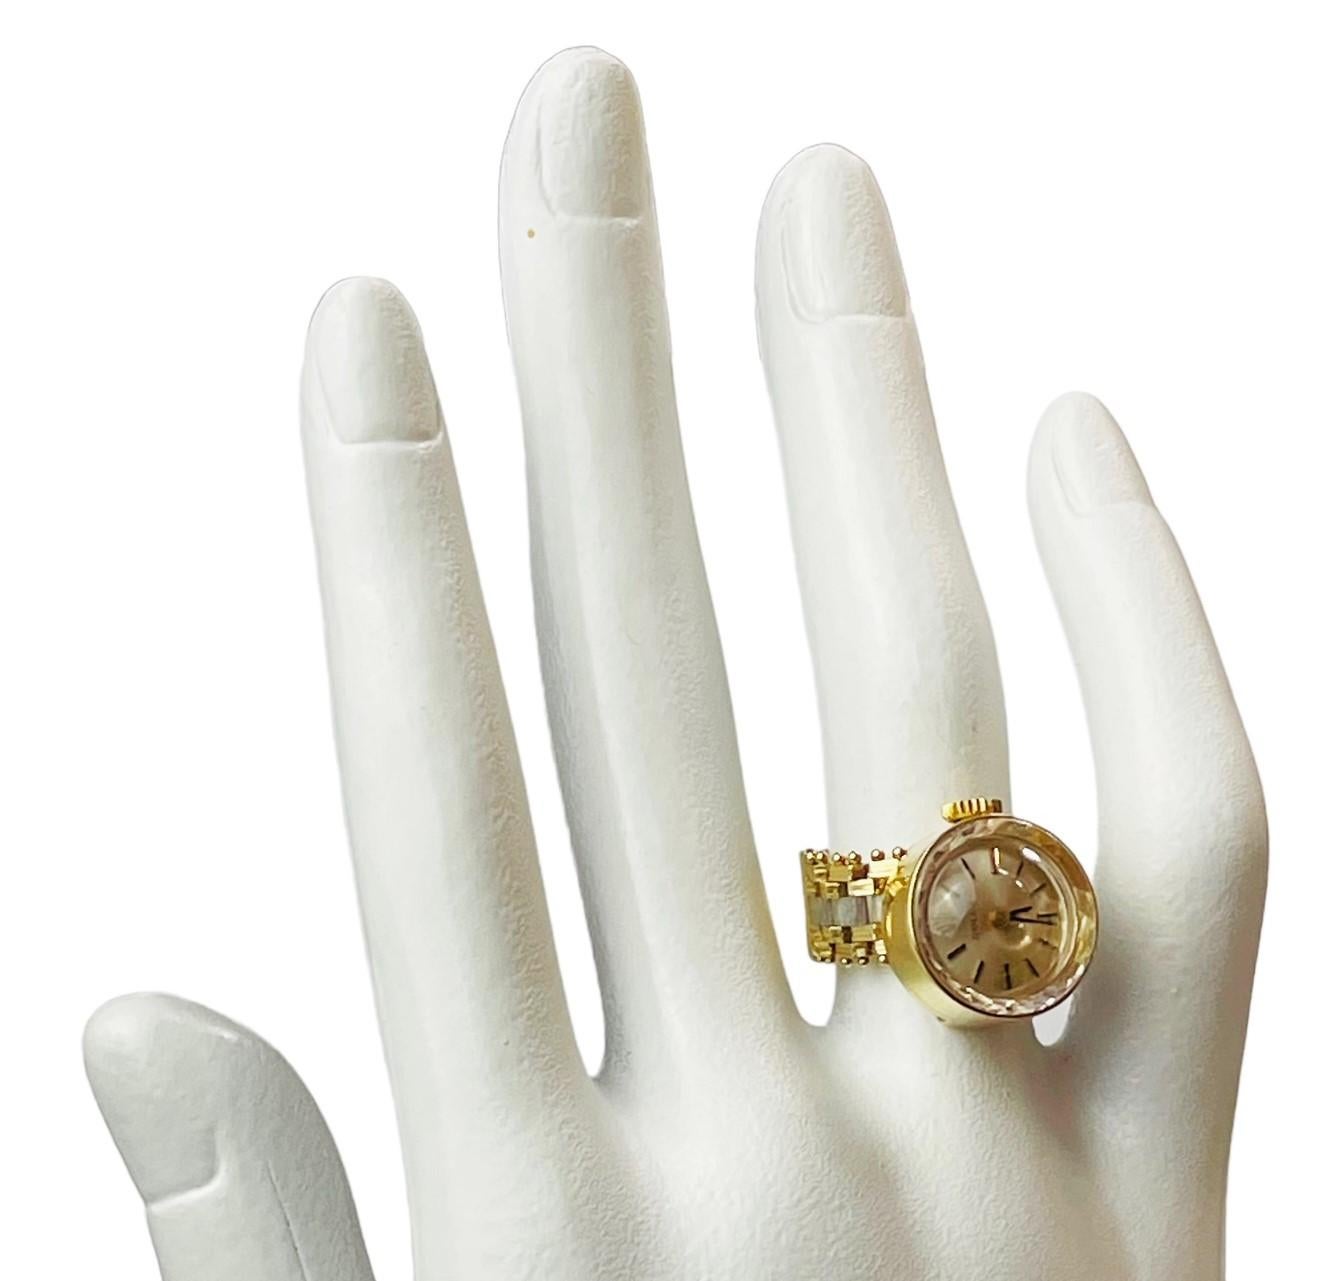 Vintage 1950s Ladies Rolex 14k Gold Watch Ring - Switzerland 5